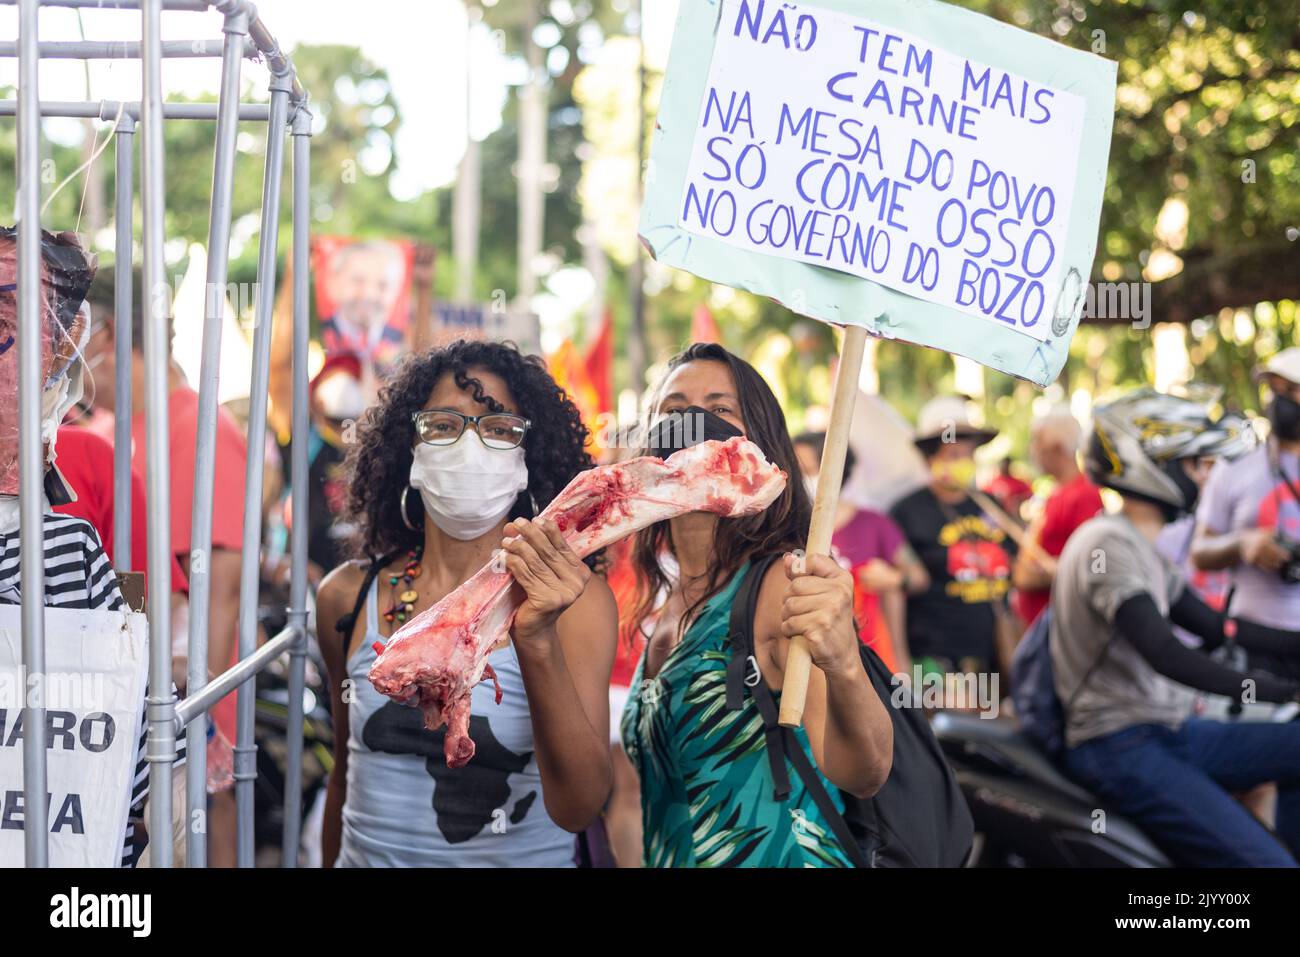 Salvador, Bahia, Brasile - 09 aprile 2022: Una donna che protesta contro la candidata presidenziale di estrema destra Jair Bolsonaro, con osso bovino nelle sue mani sy Foto Stock